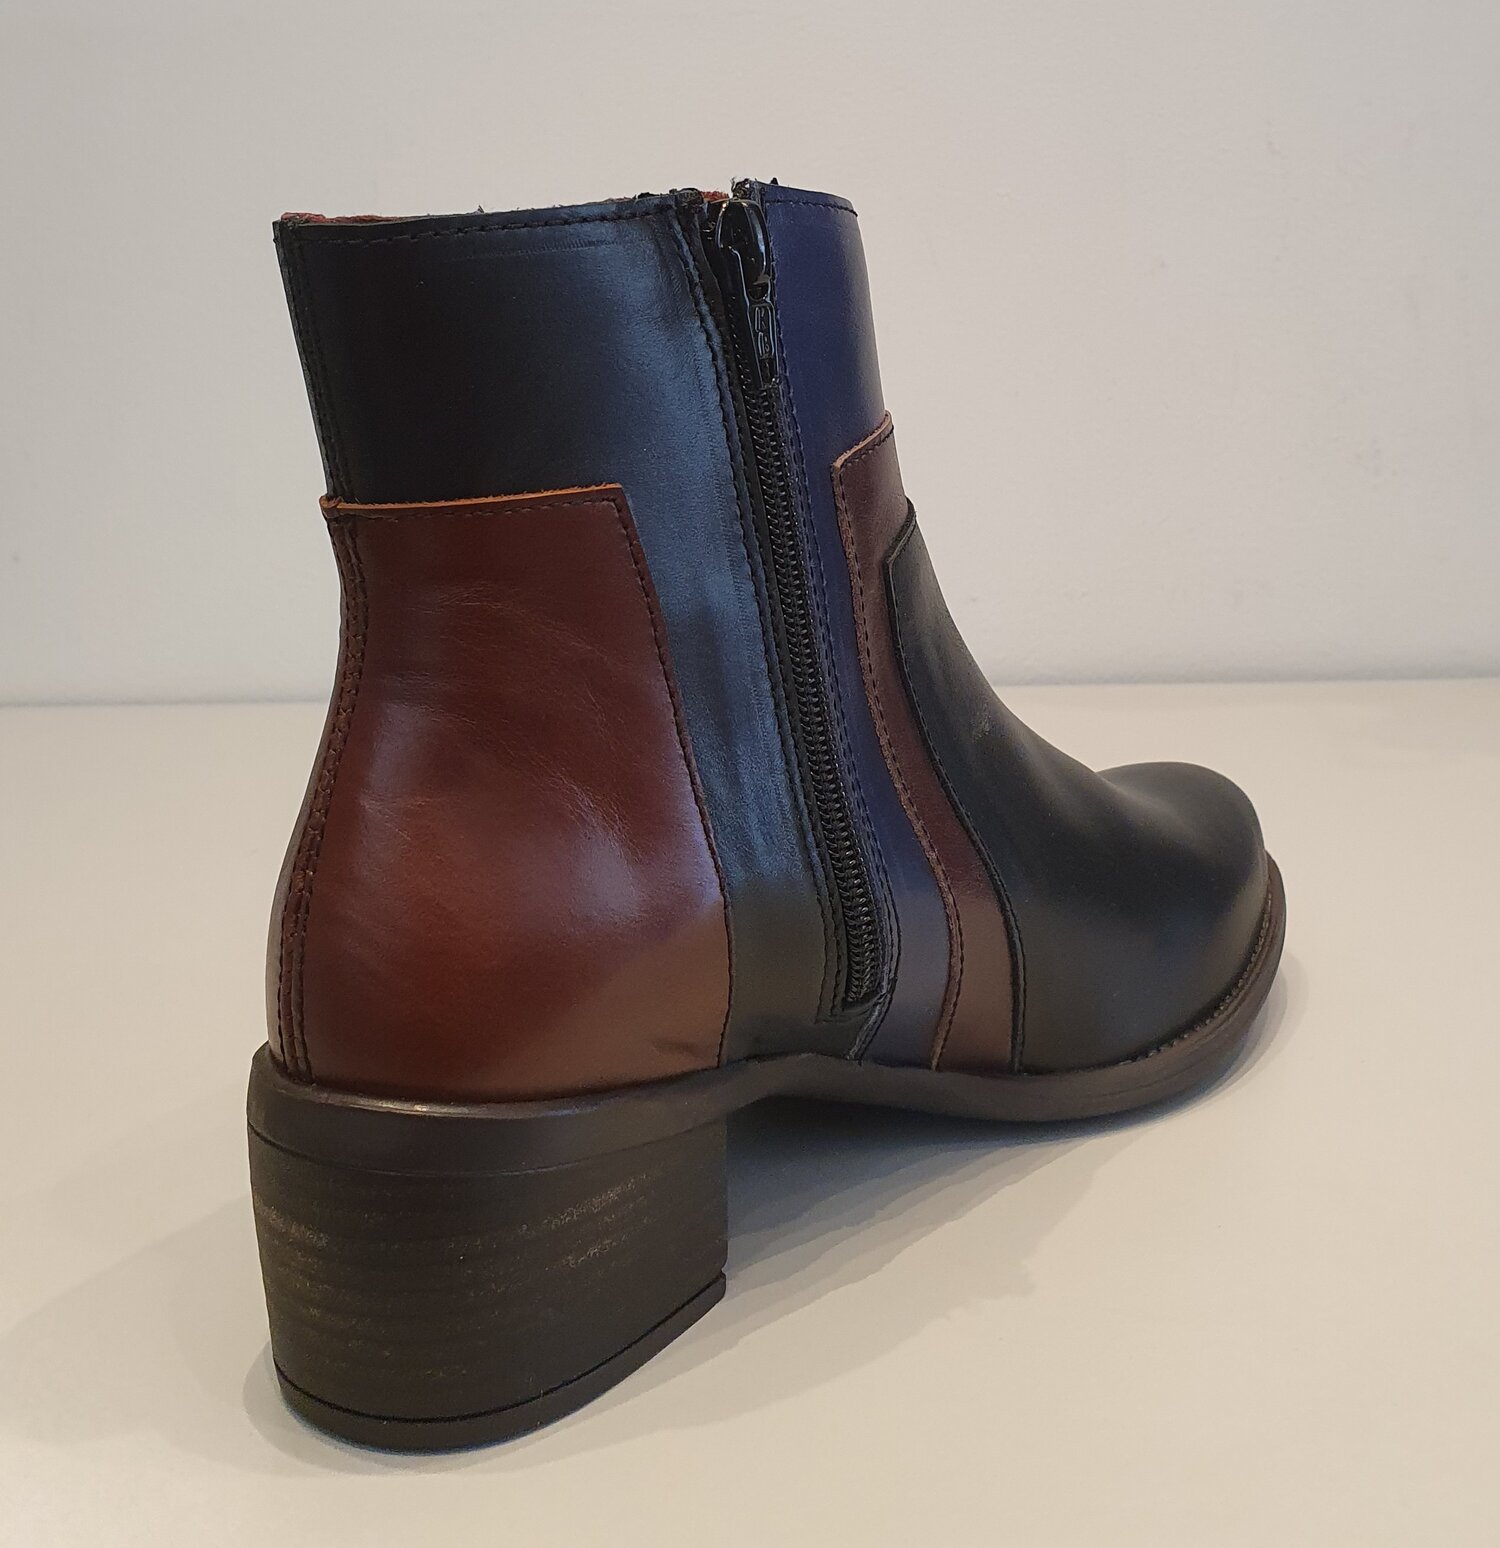 Alce Shoes 7403 noir bleu et marron — Mariejess